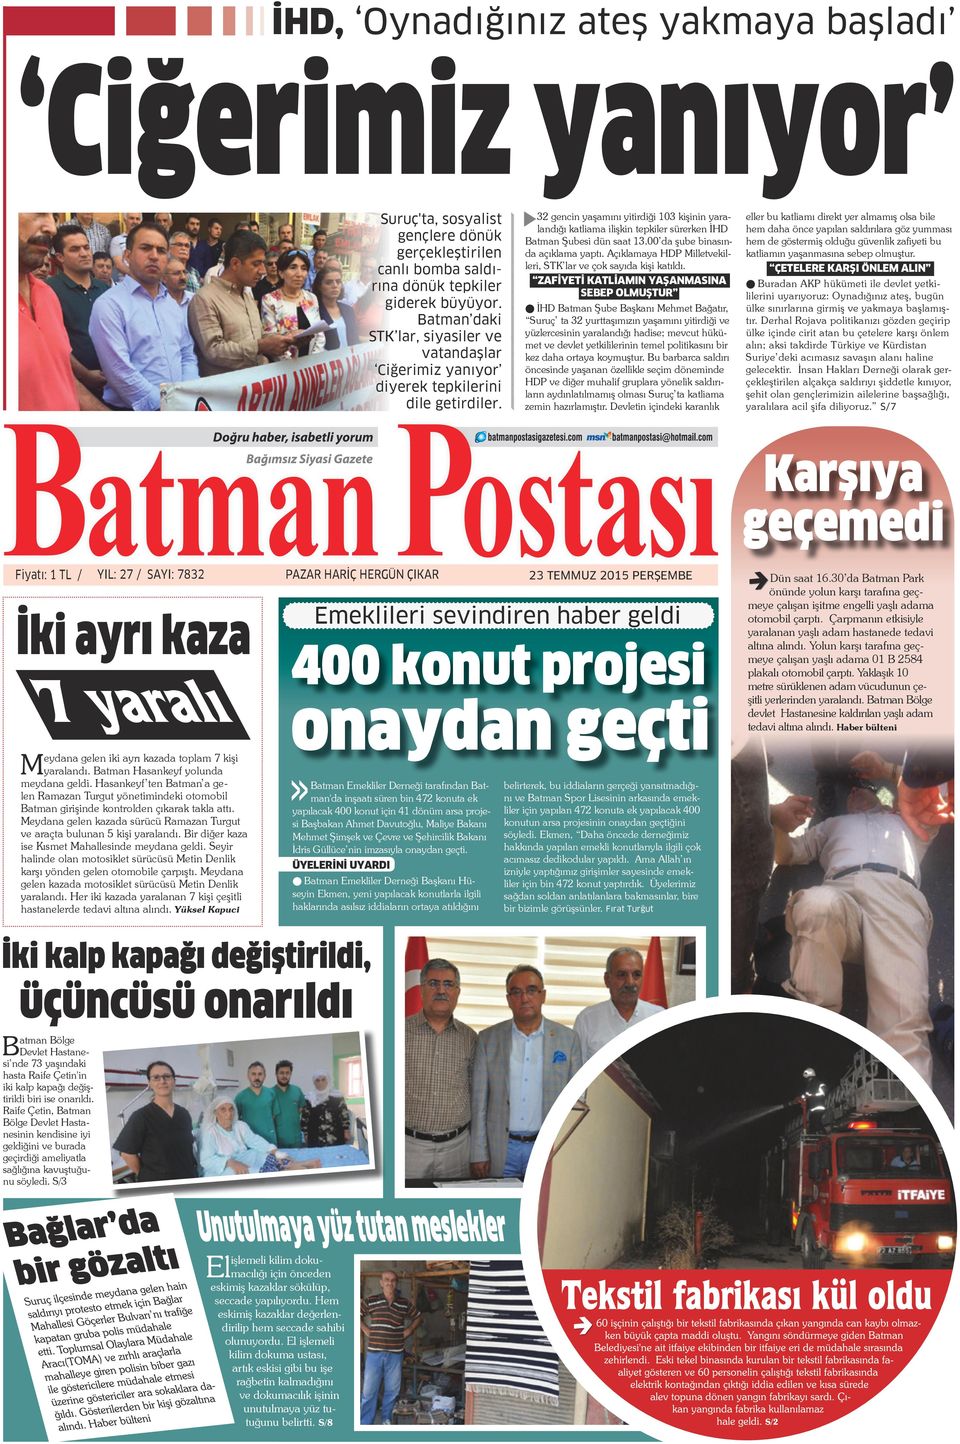 Batman daki STK lar, siyasiler ve vatandaşlar Ciğerimiz yanıyor diyerek tepkilerini dile getirdiler.